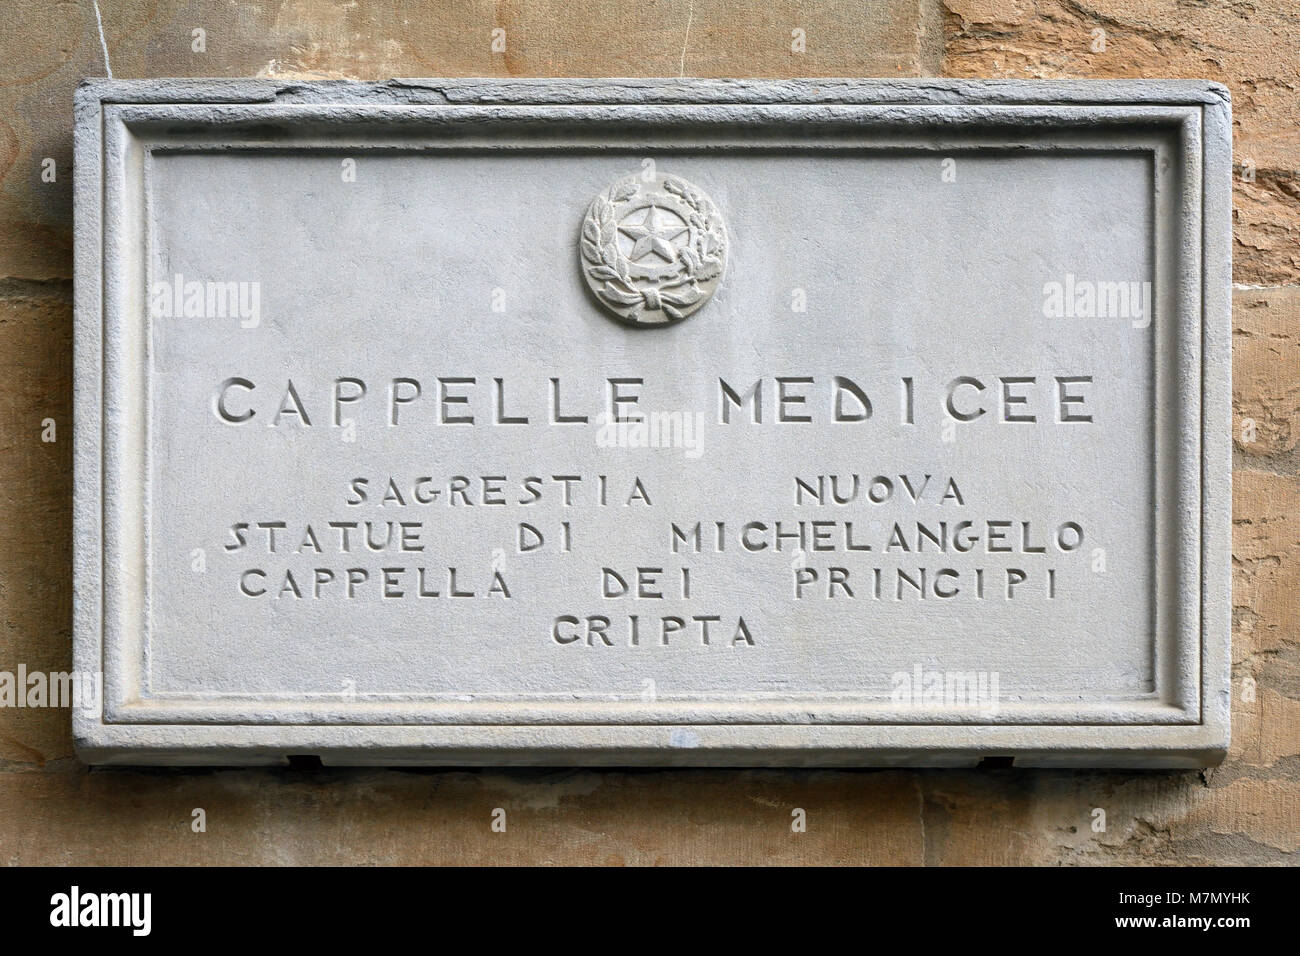 Scheda di informazioni in ingresso per le Cappelle Medicee Firenze - Italia. Foto Stock